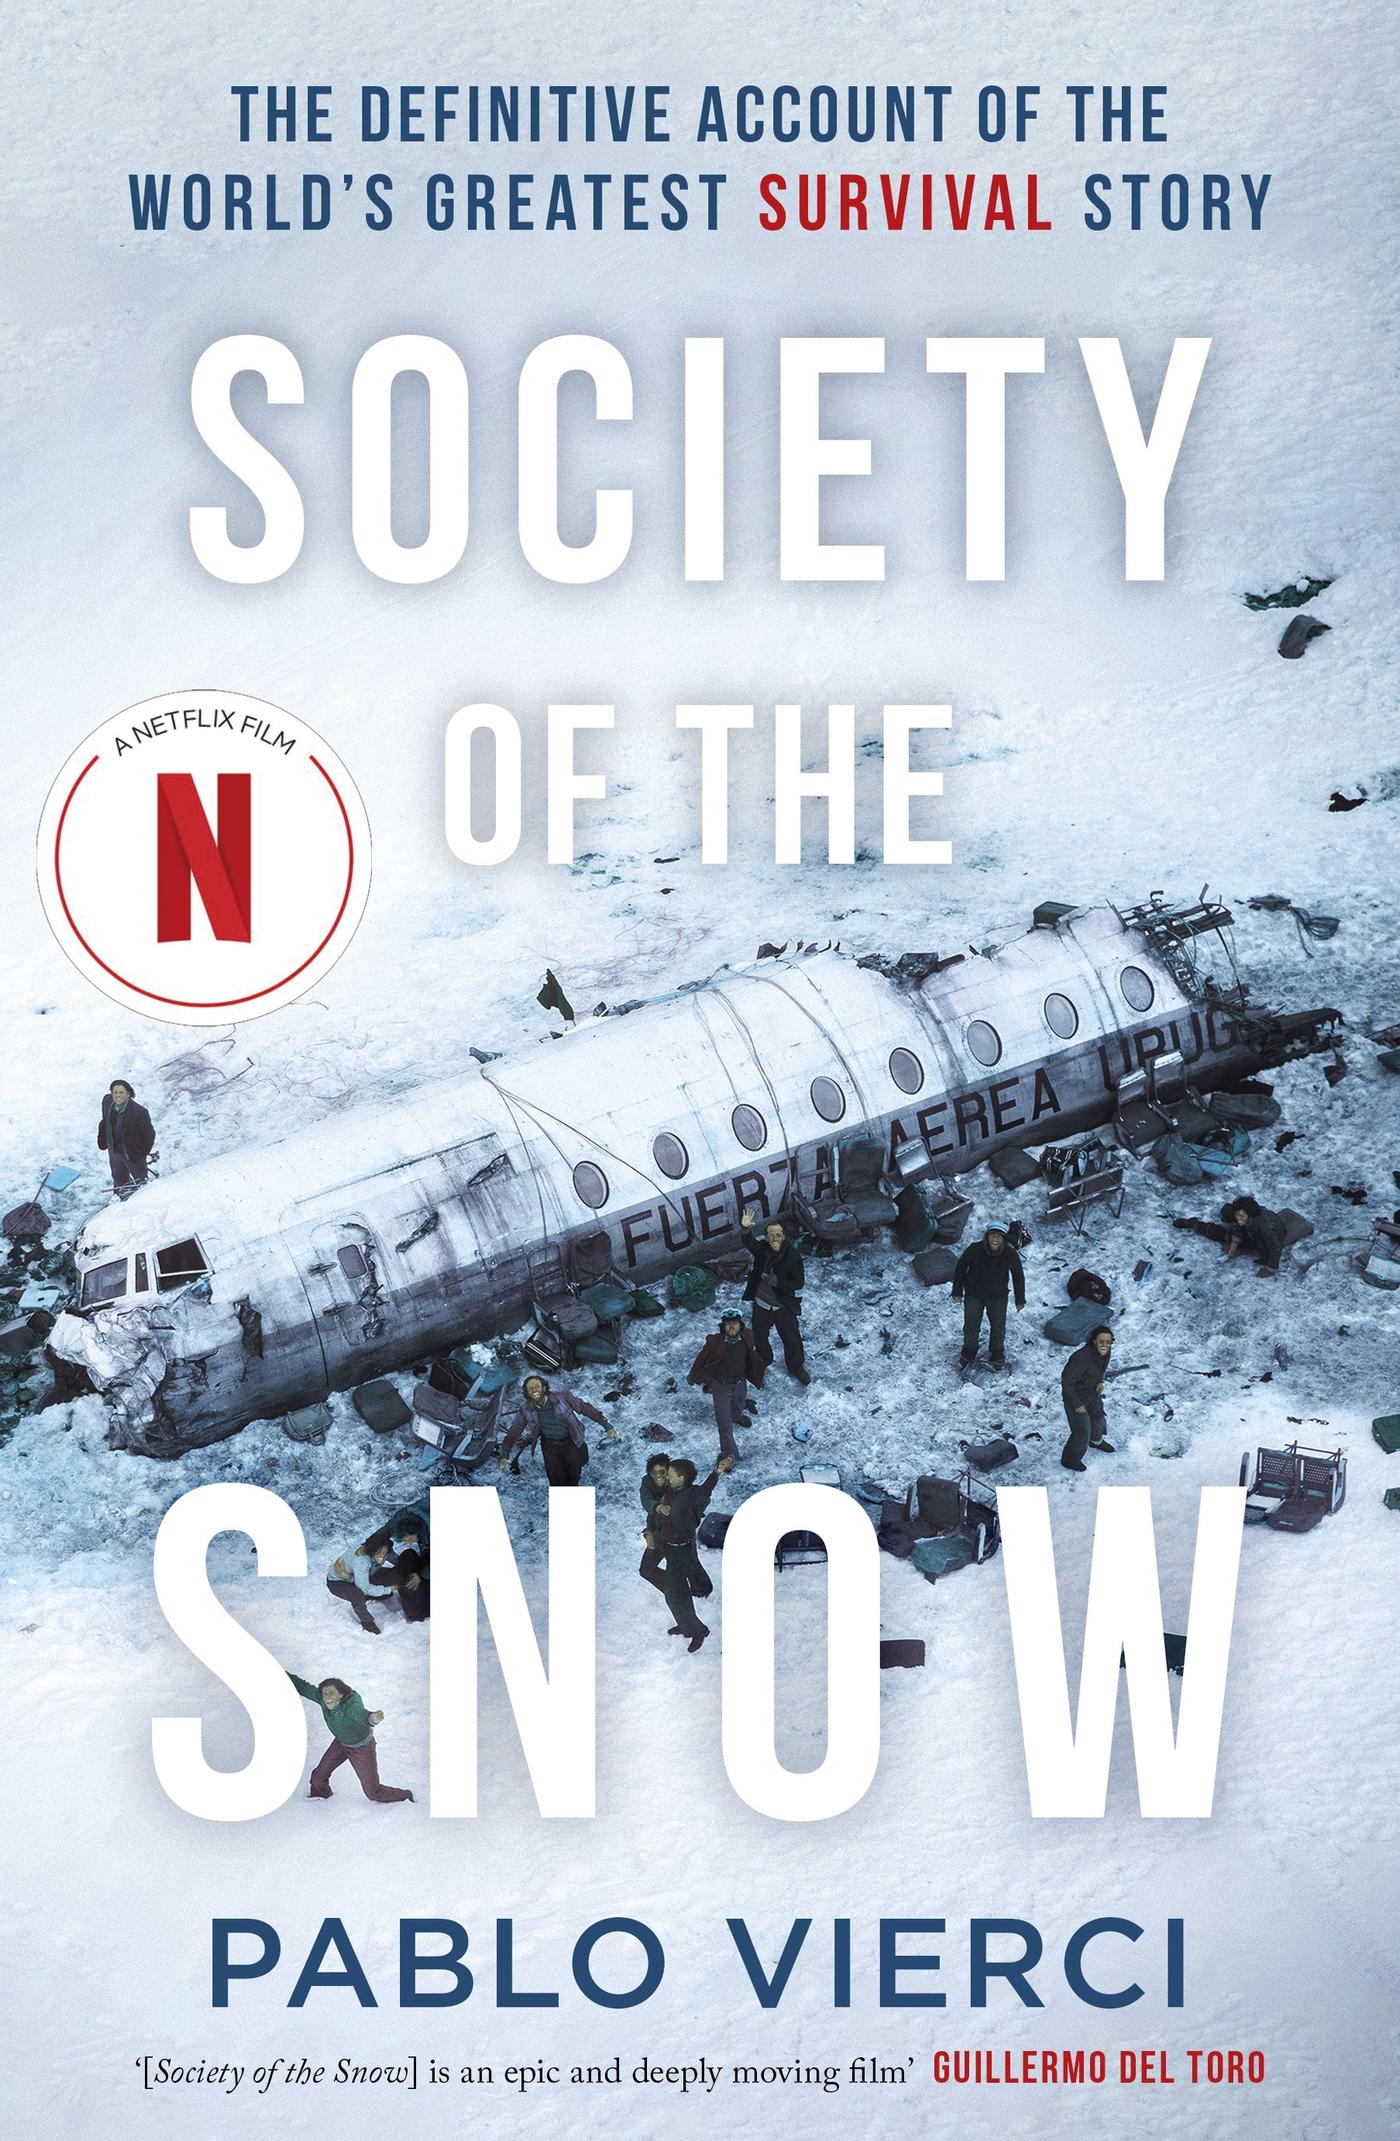  la sociedad de la nieve: 9789500729758: Pablo Vierci: Libros